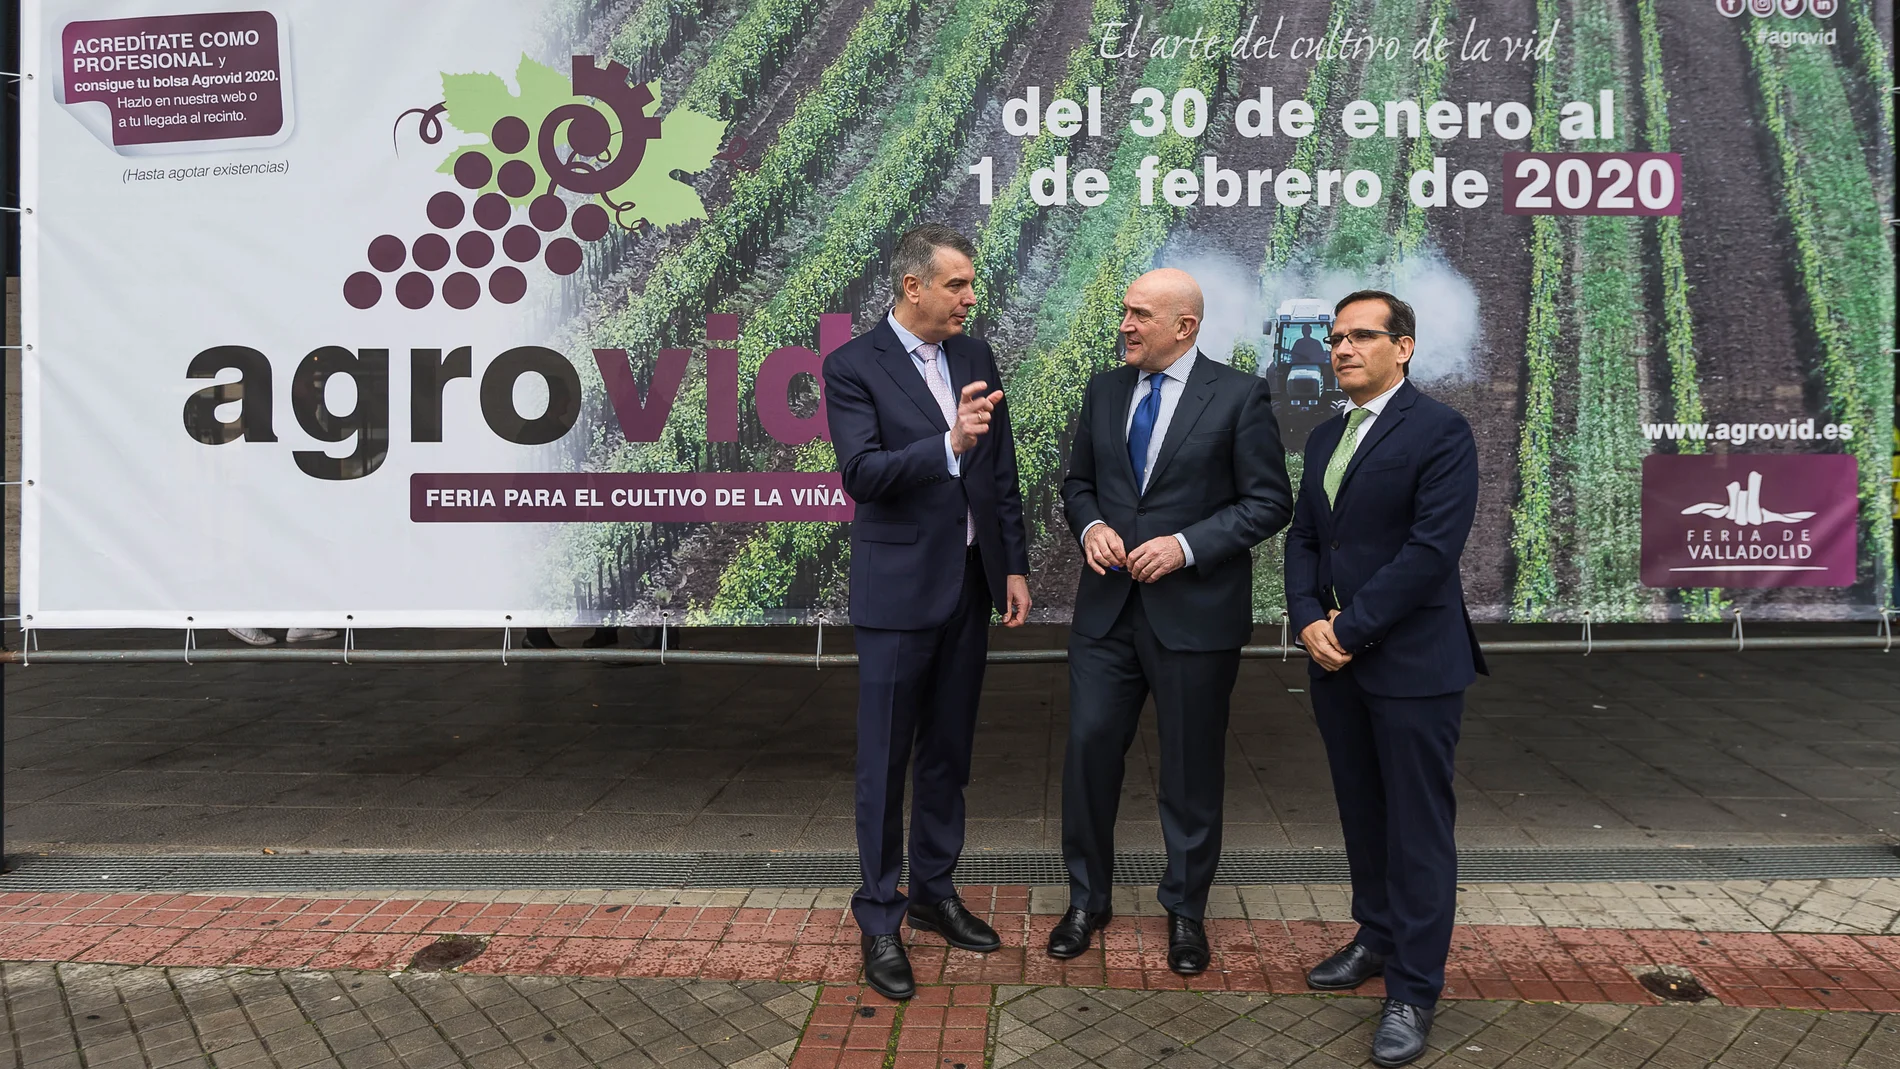 20200129 - VALLADOLID: El consejero de Agricultura, Ganadería y Desarrollo Rural, Jesús Julio Carnero inaugura 'Agrovid', la feria para el cultivo de la viña